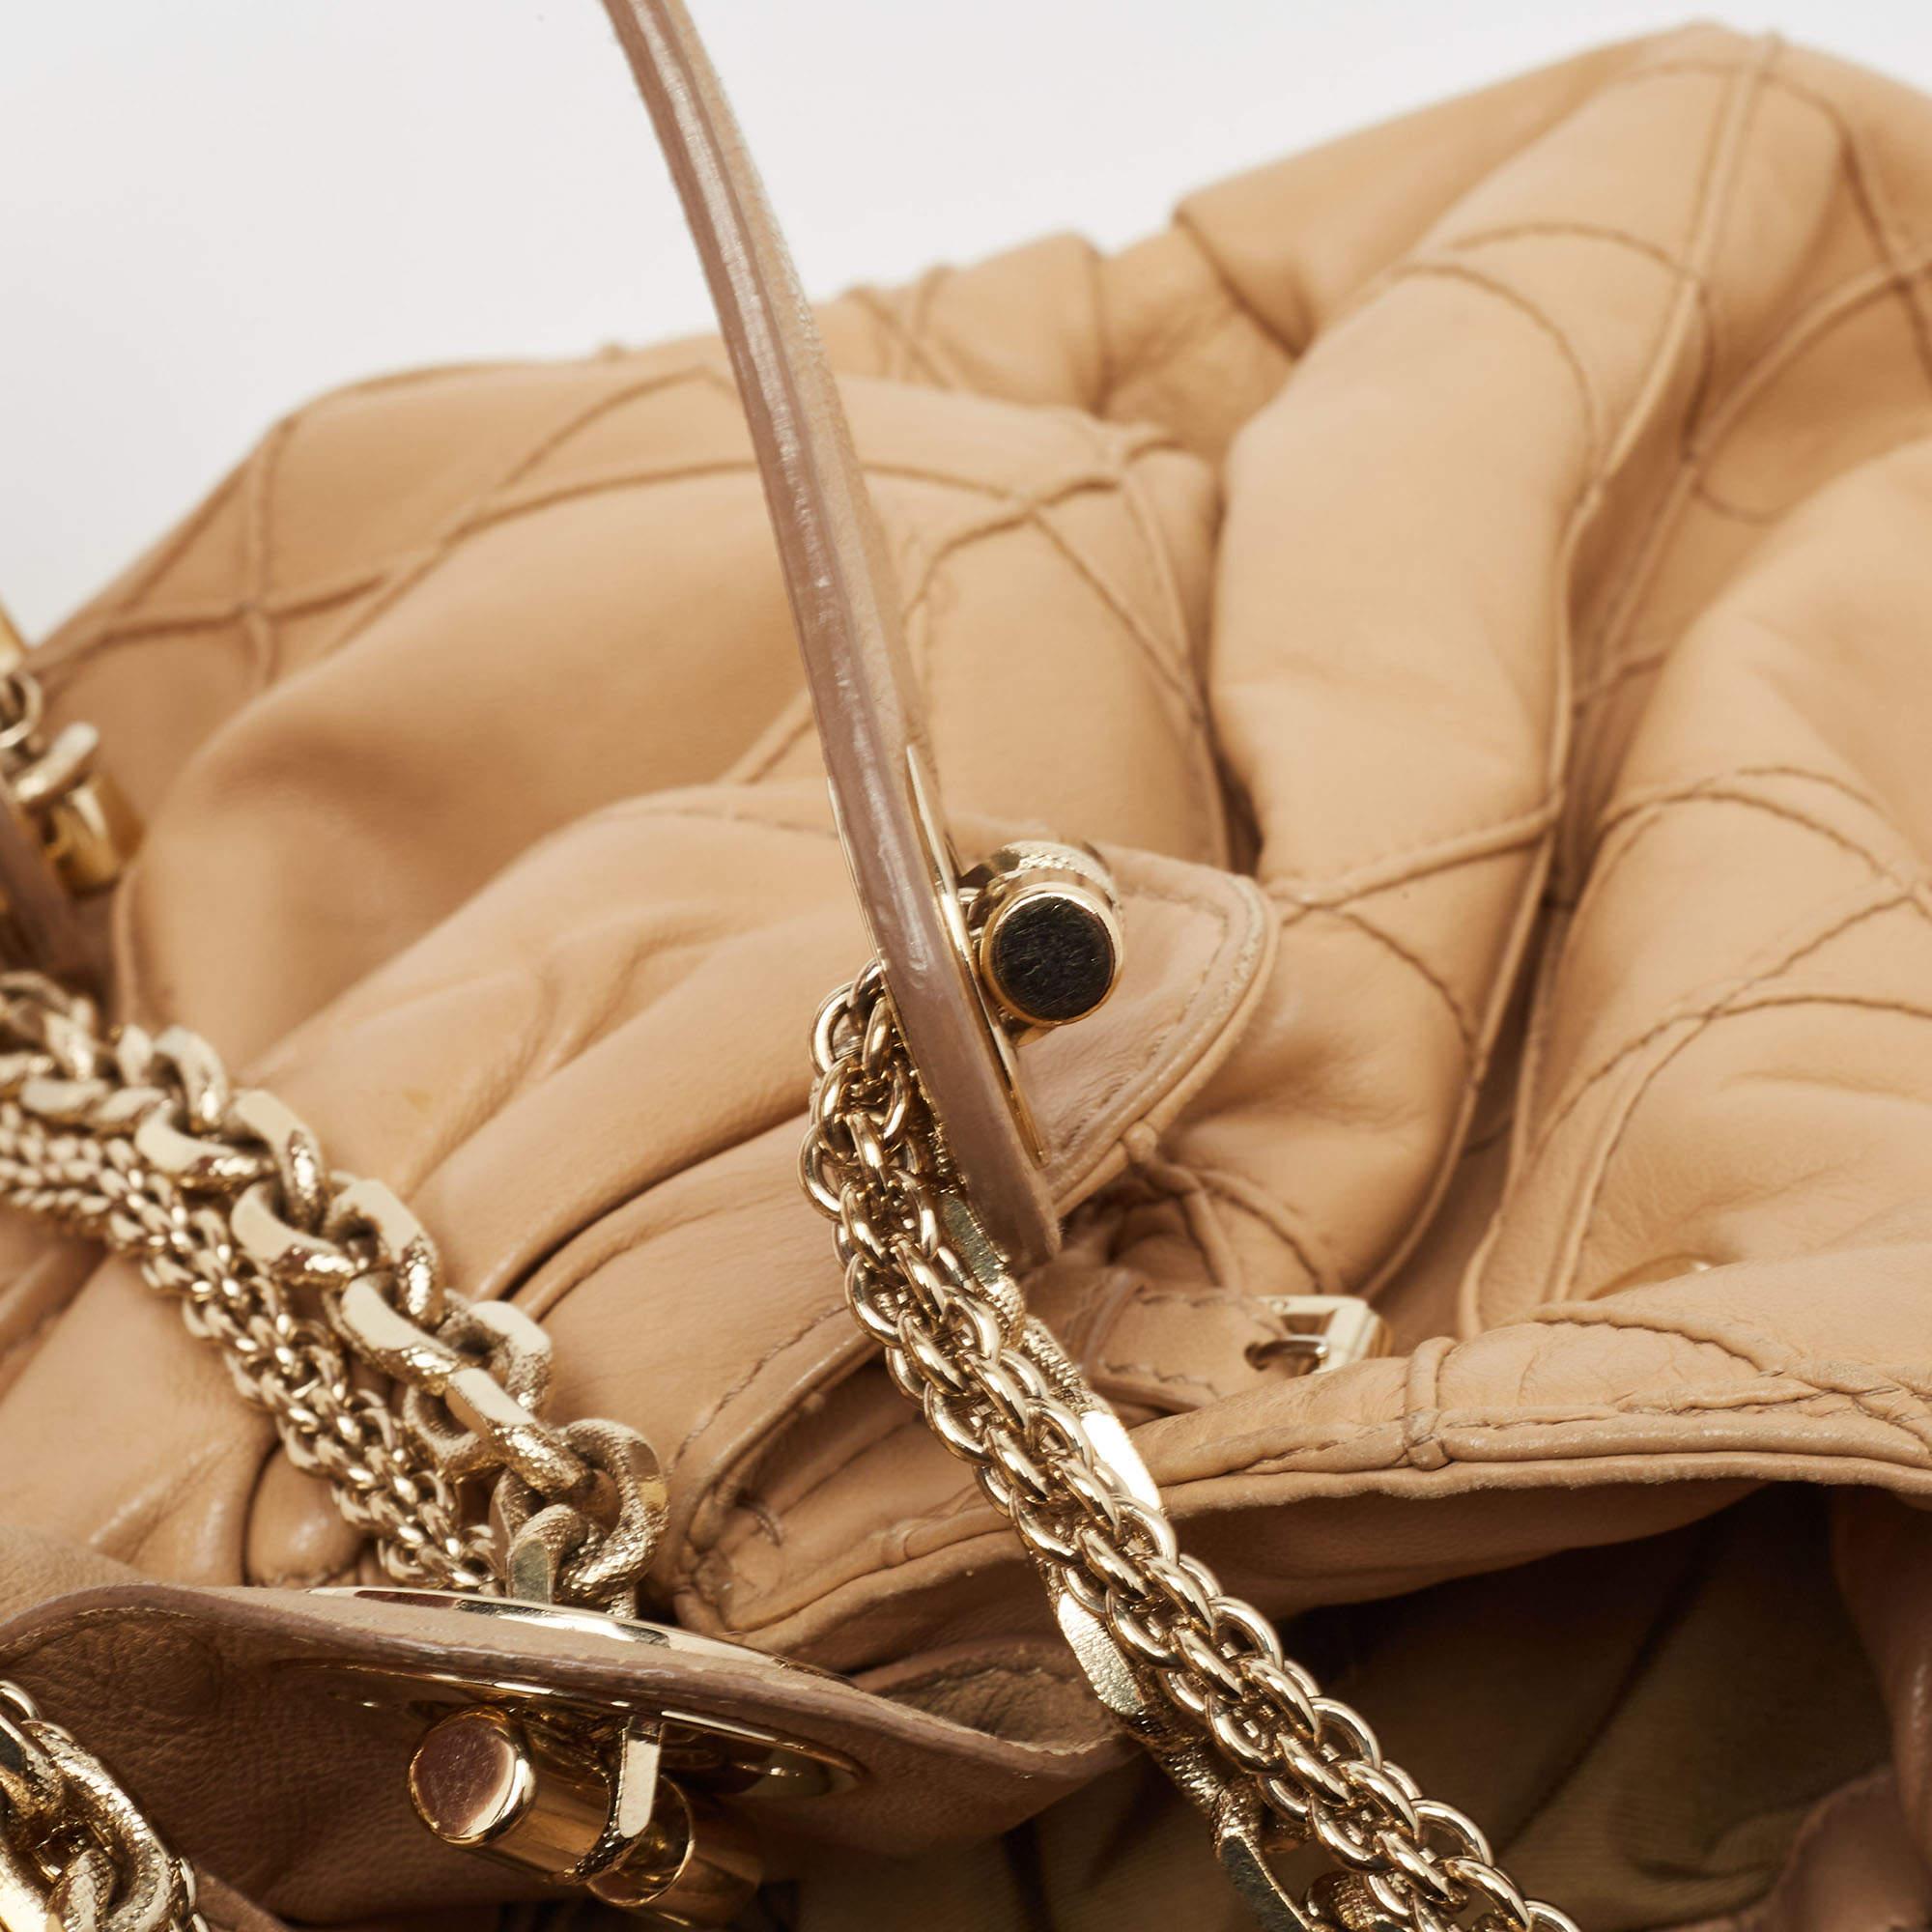 Dior Beige Cannage Leather Le Trente Shoulder Bag For Sale 2